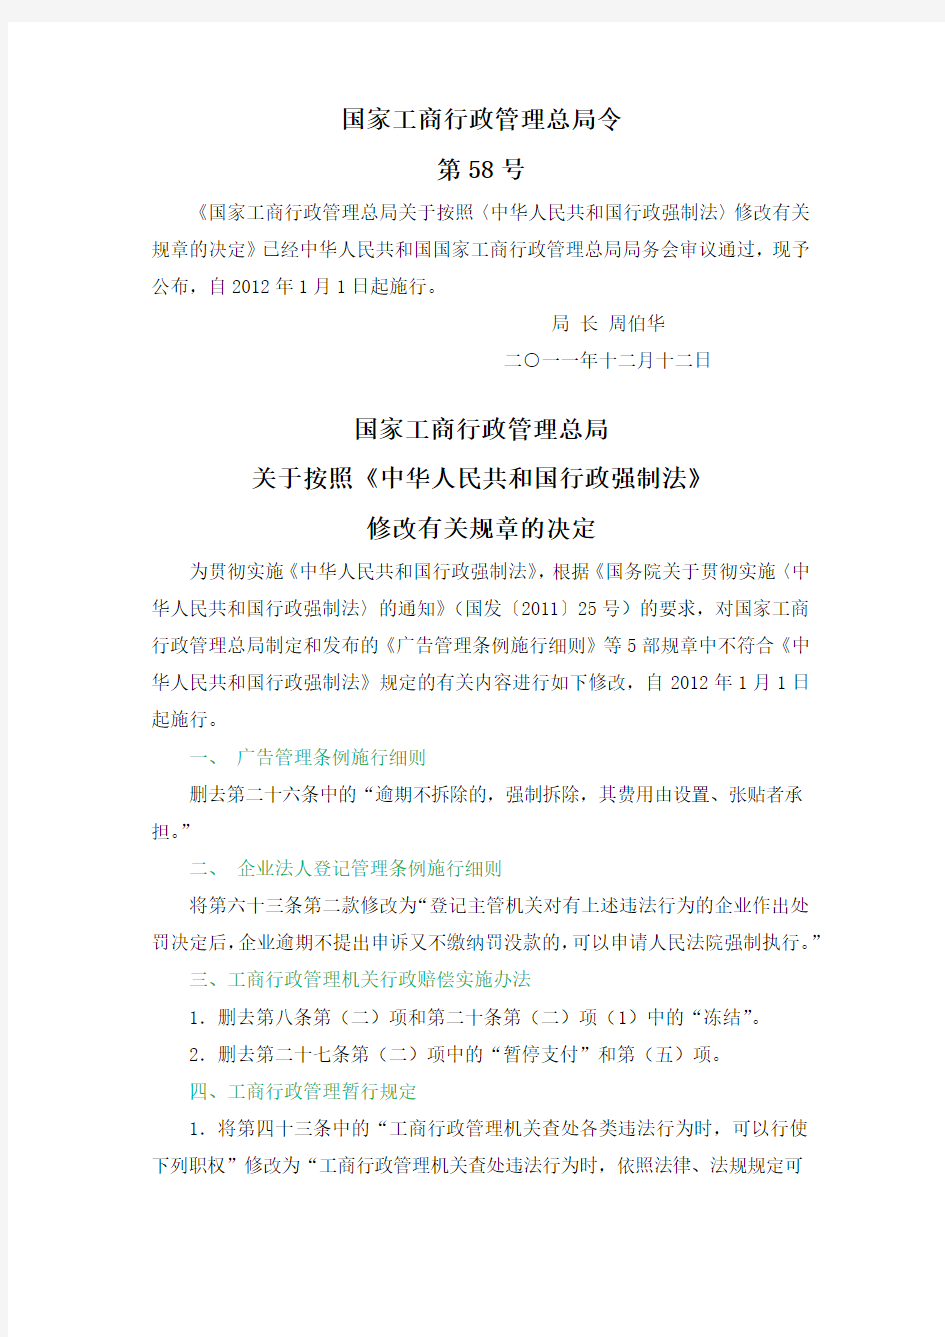 关于按照《中华人民共和国行政强制法》修改有关规章的决定(工商总局令第58号)